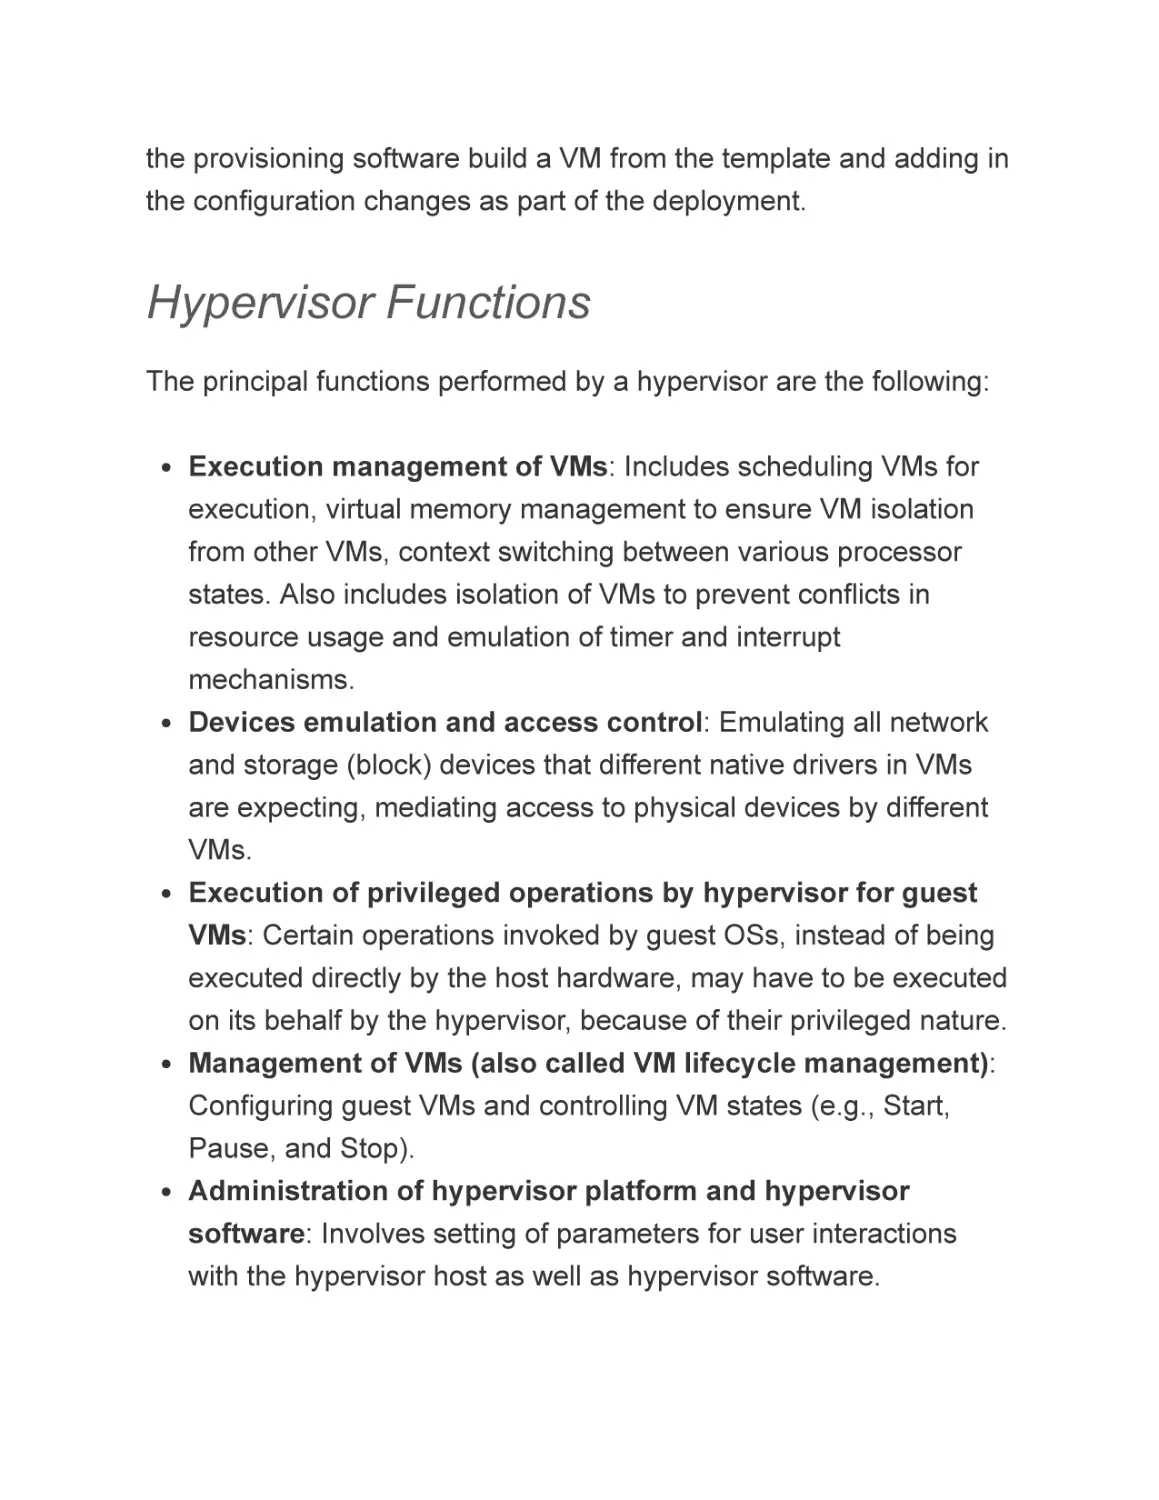 Hypervisor Functions